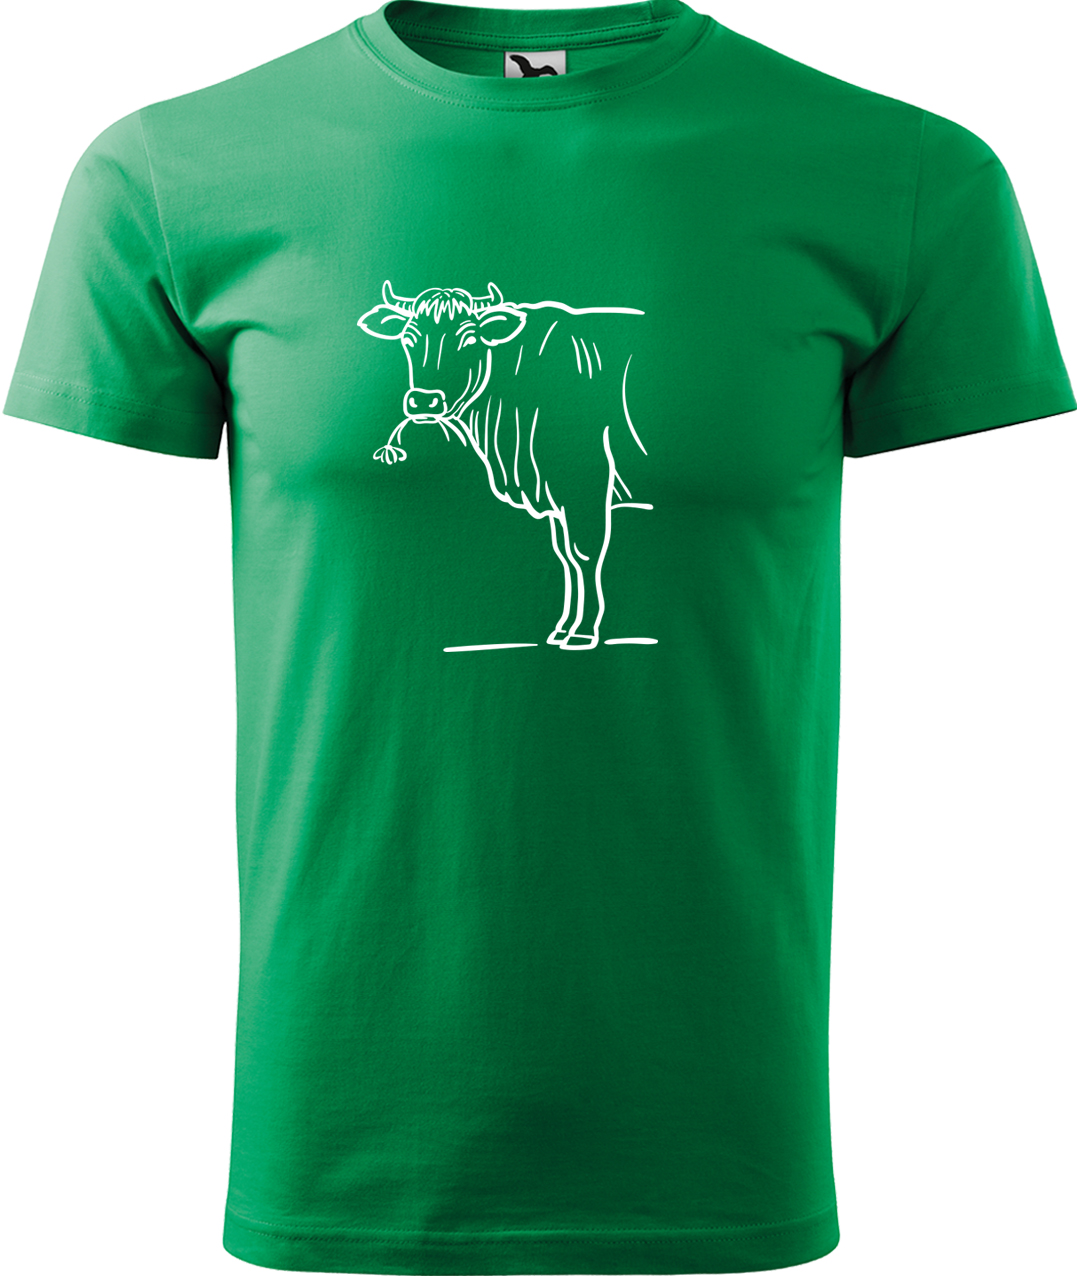 Pánské tričko s krávou - Býk Velikost: L, Barva: Středně zelená (16), Střih: pánský